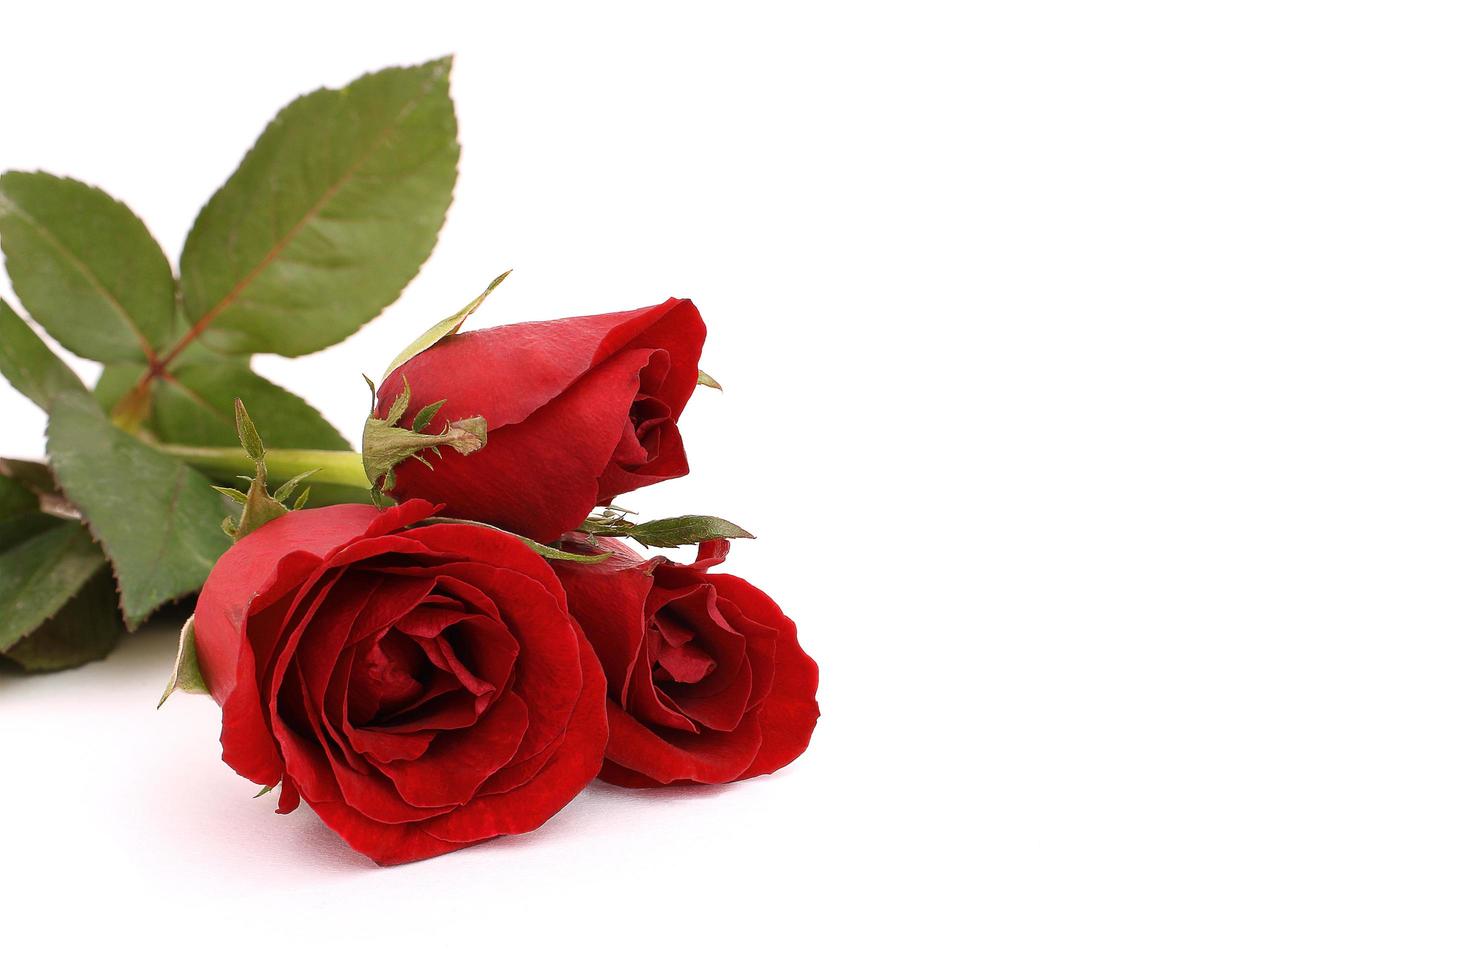 rote Rose lokalisiert auf einem weißen Hintergrund foto